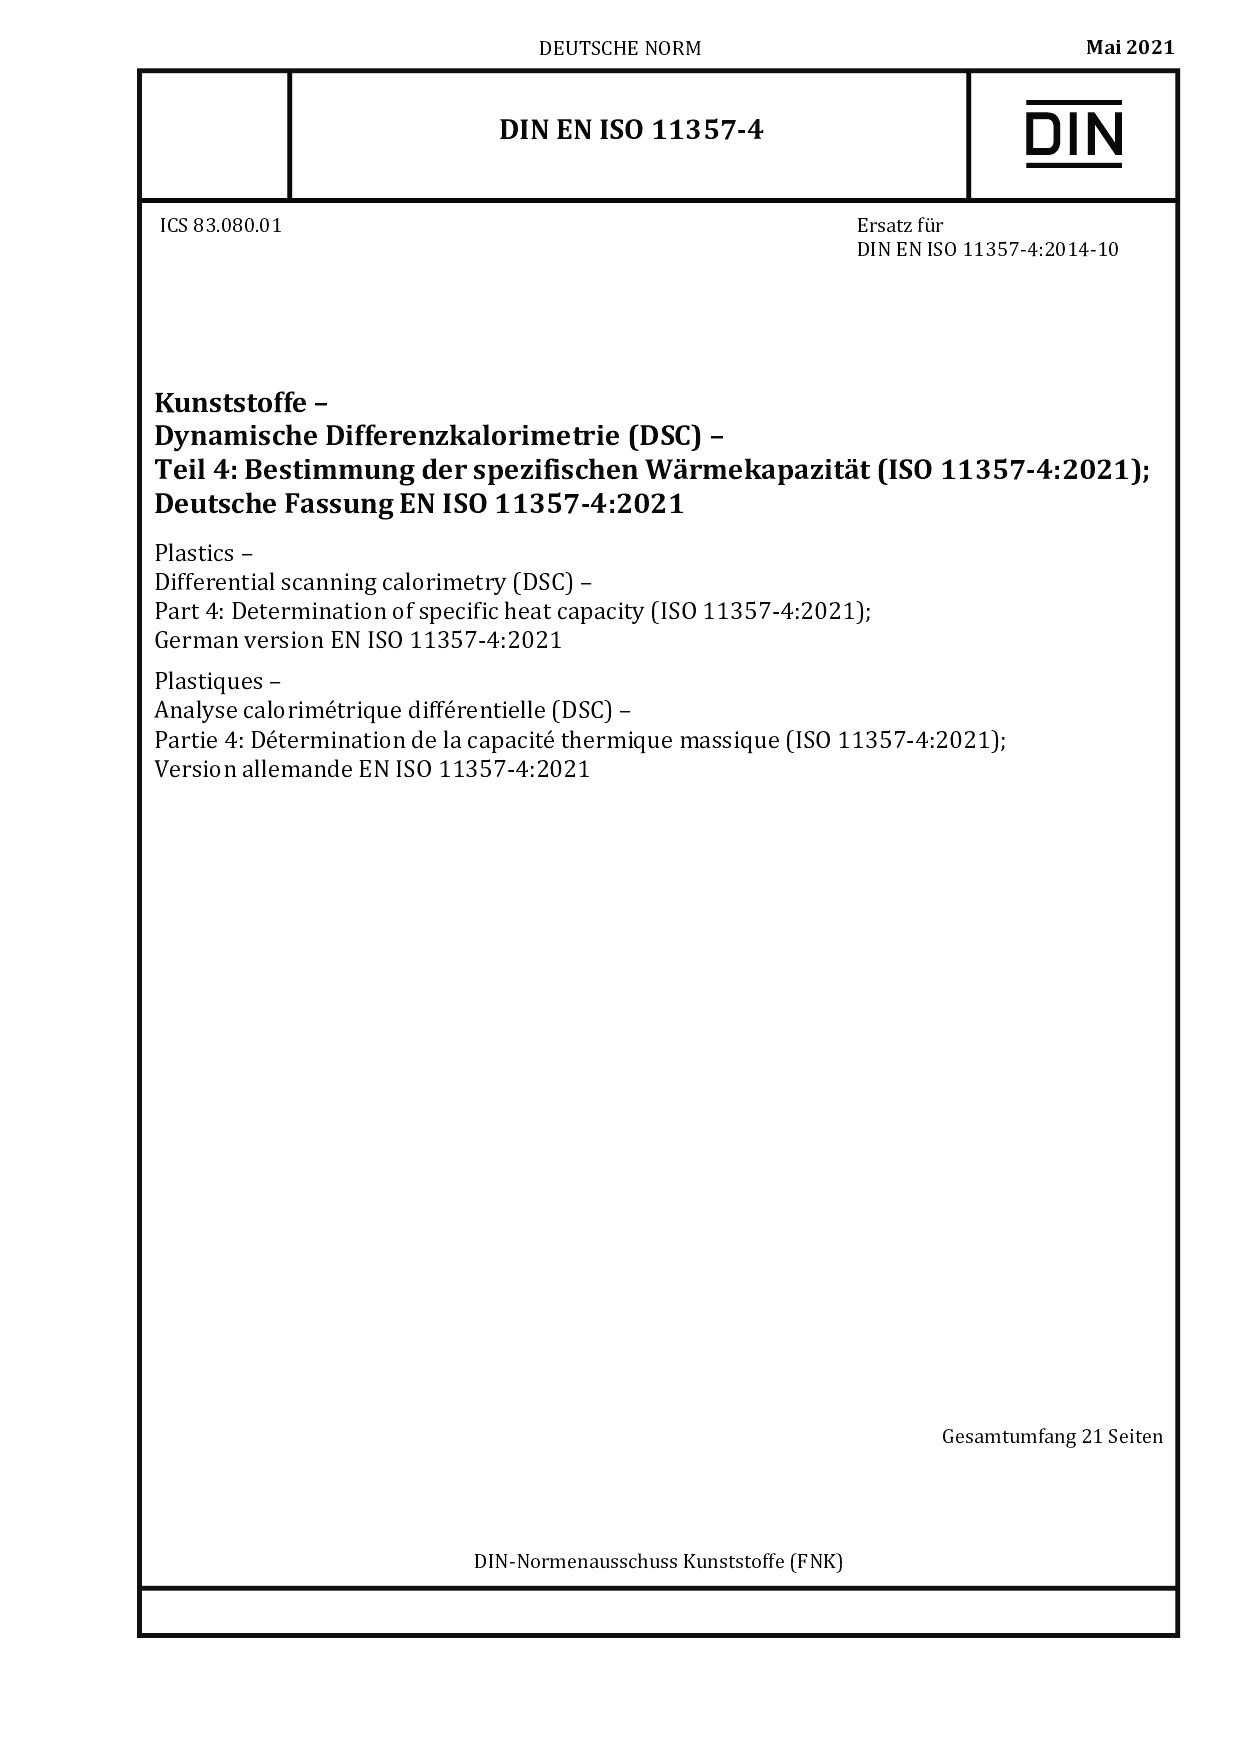 DIN EN ISO 11357-4:2021封面图